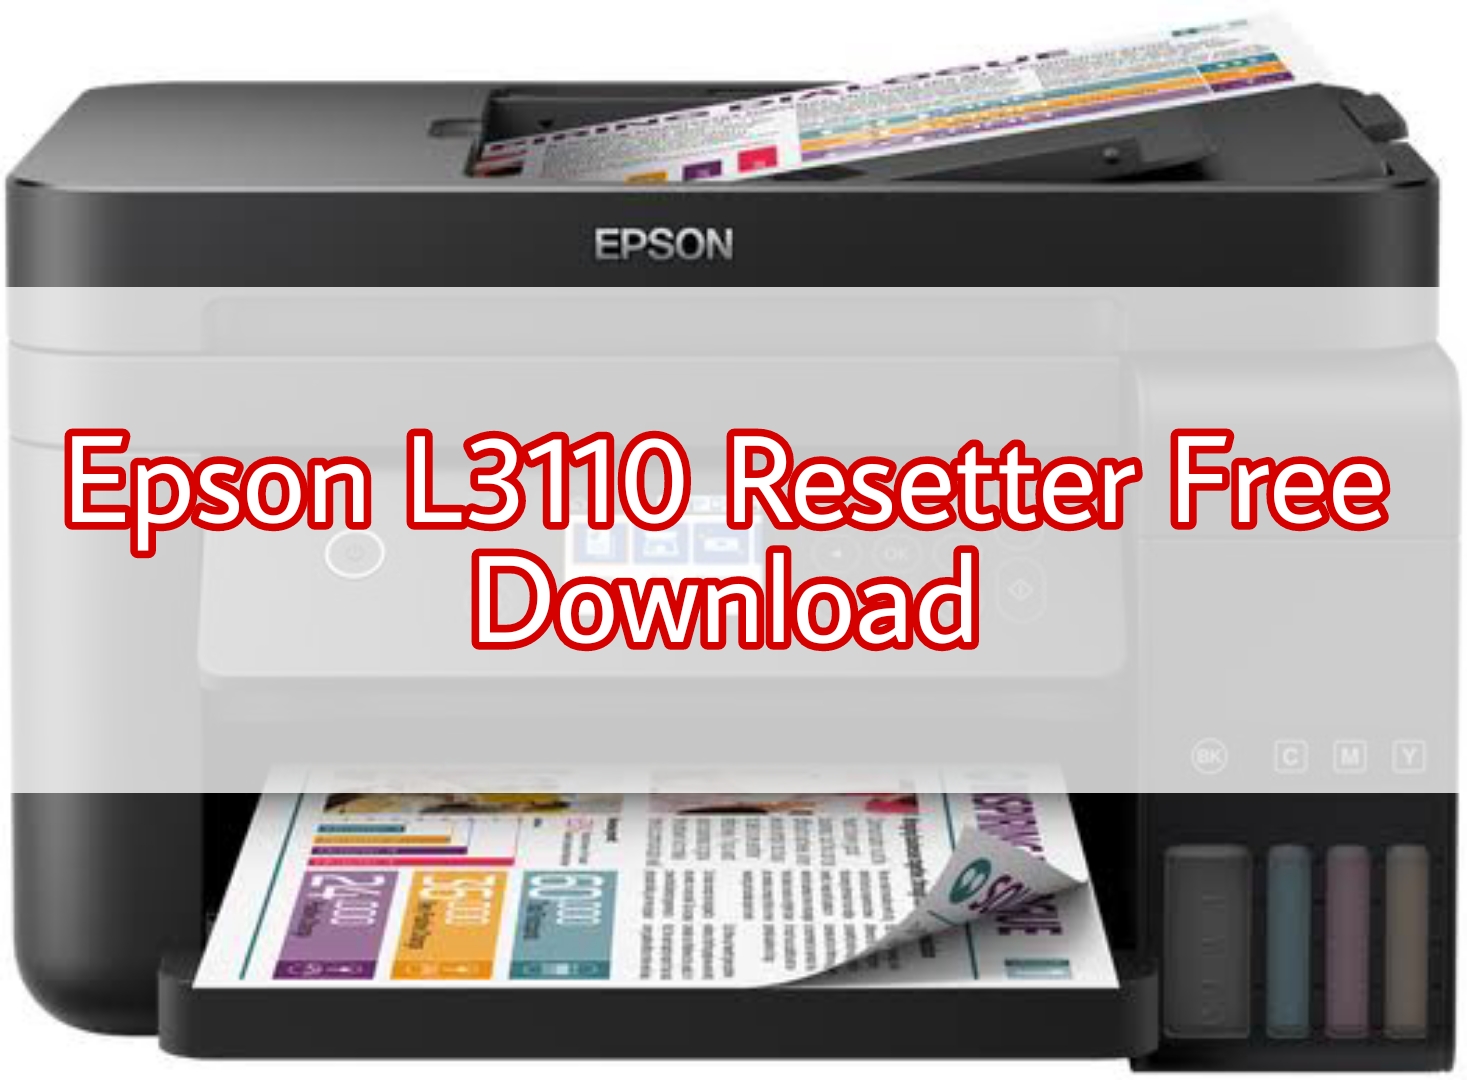 EPSON L3110 RESETTER